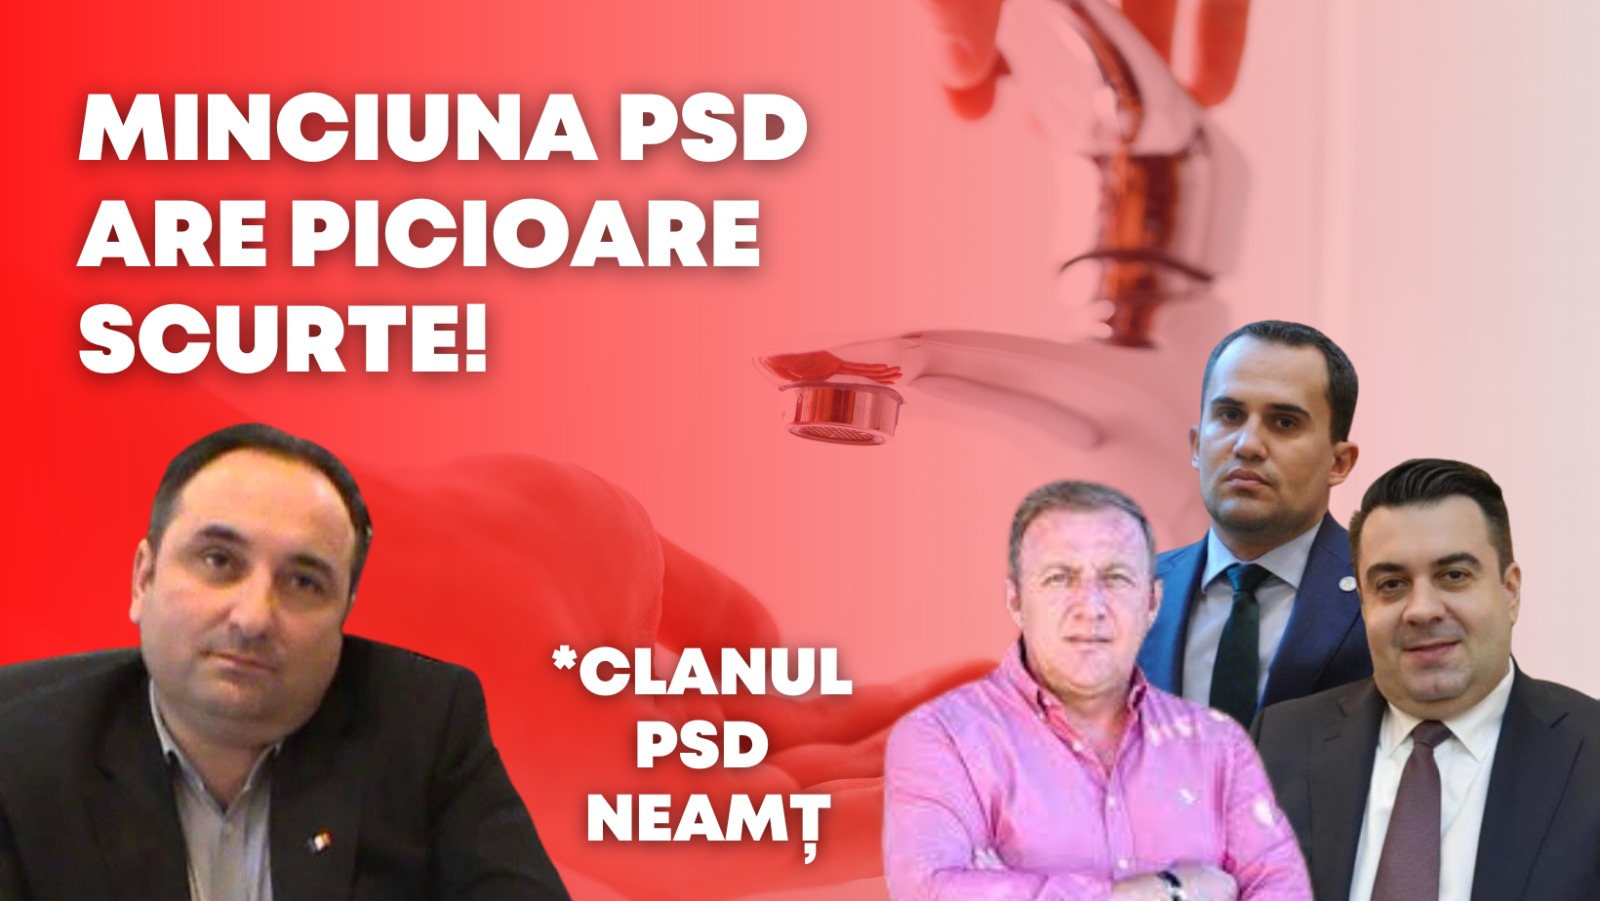 PNL Neamț: „Minciunile PSD au picioare scurte”